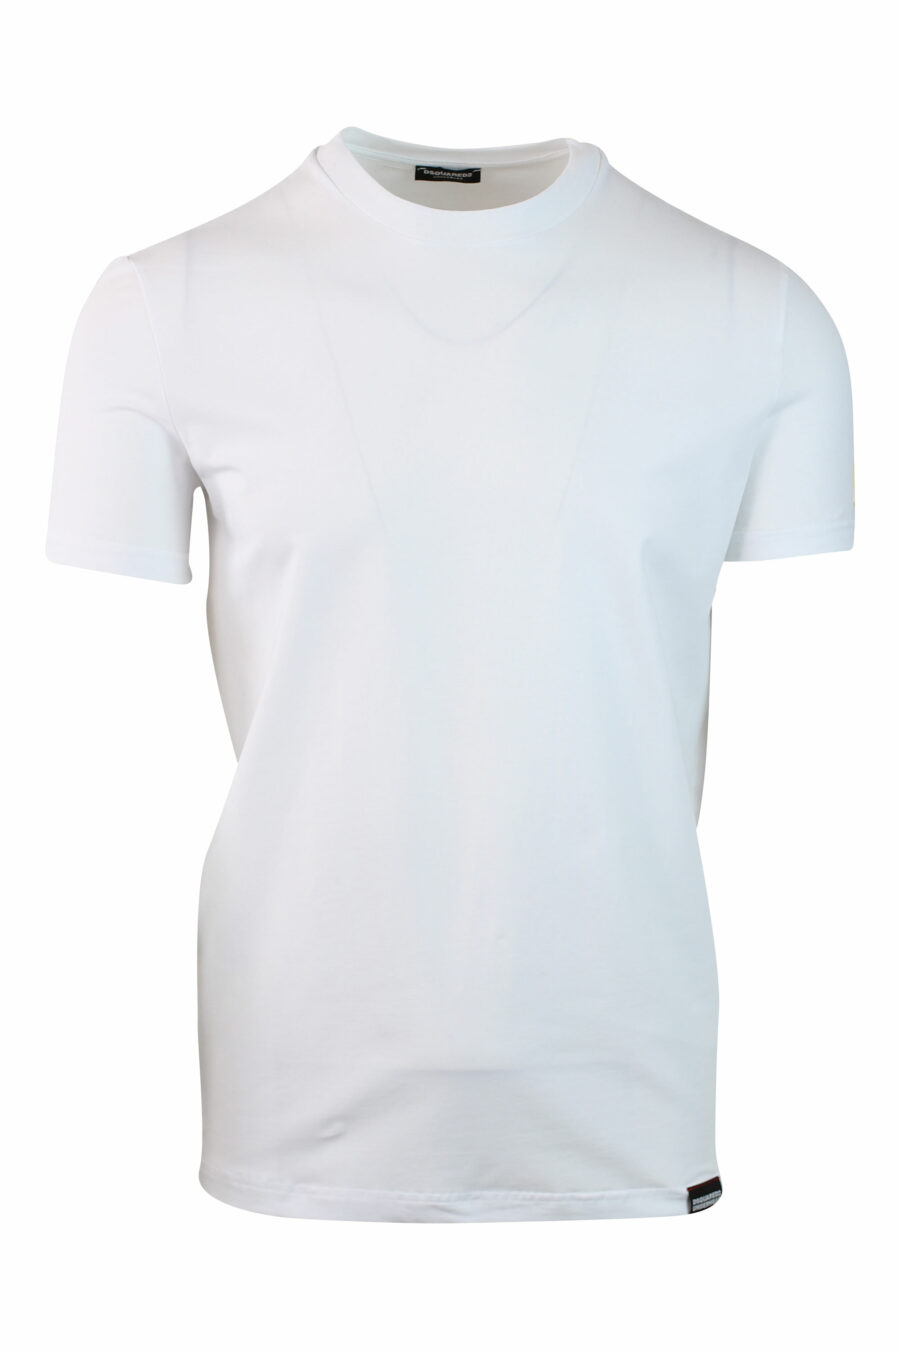 Camiseta blanca con minilogo parche "icon" amarillo en manga - IMG 0140